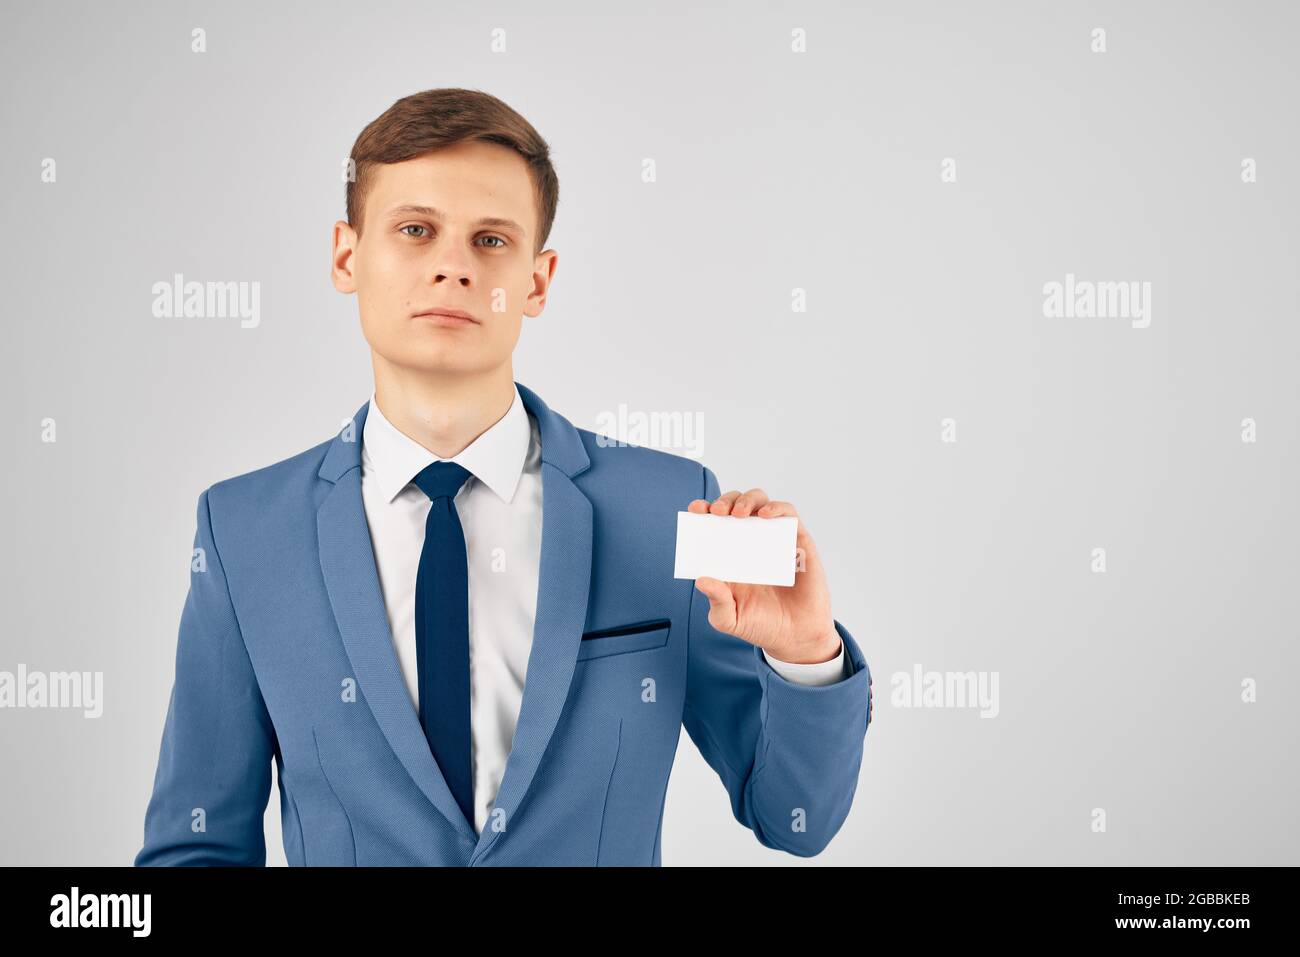 Un homme en costume avec une carte de visite dans ses mains une carte d' identité Copy Space professionnel Photo Stock - Alamy